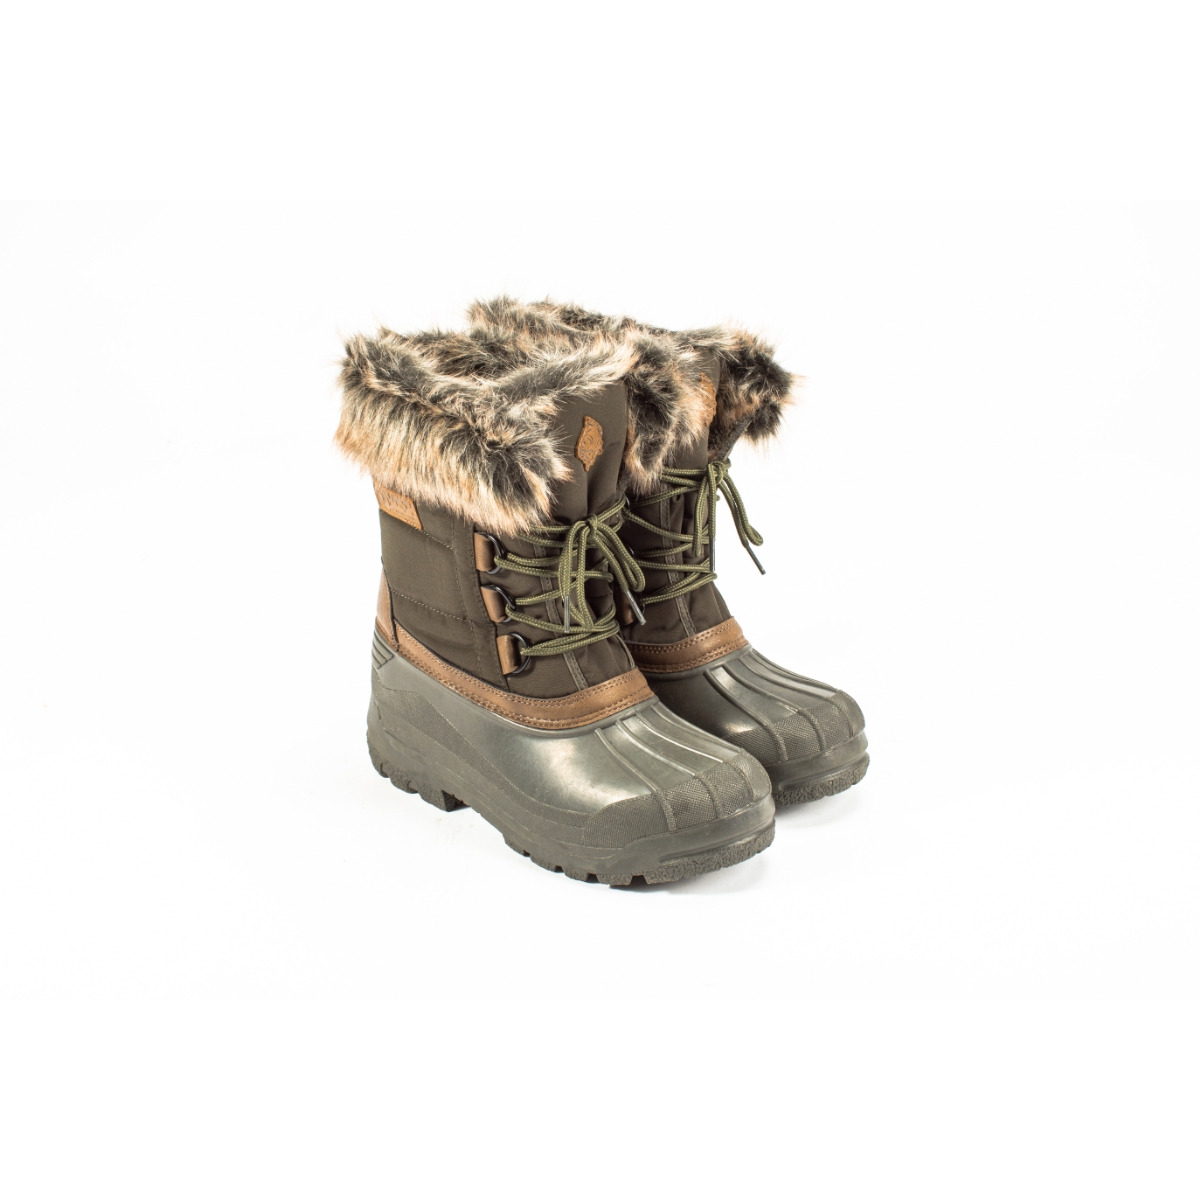 Nash Zt Polar Boots - Size 12